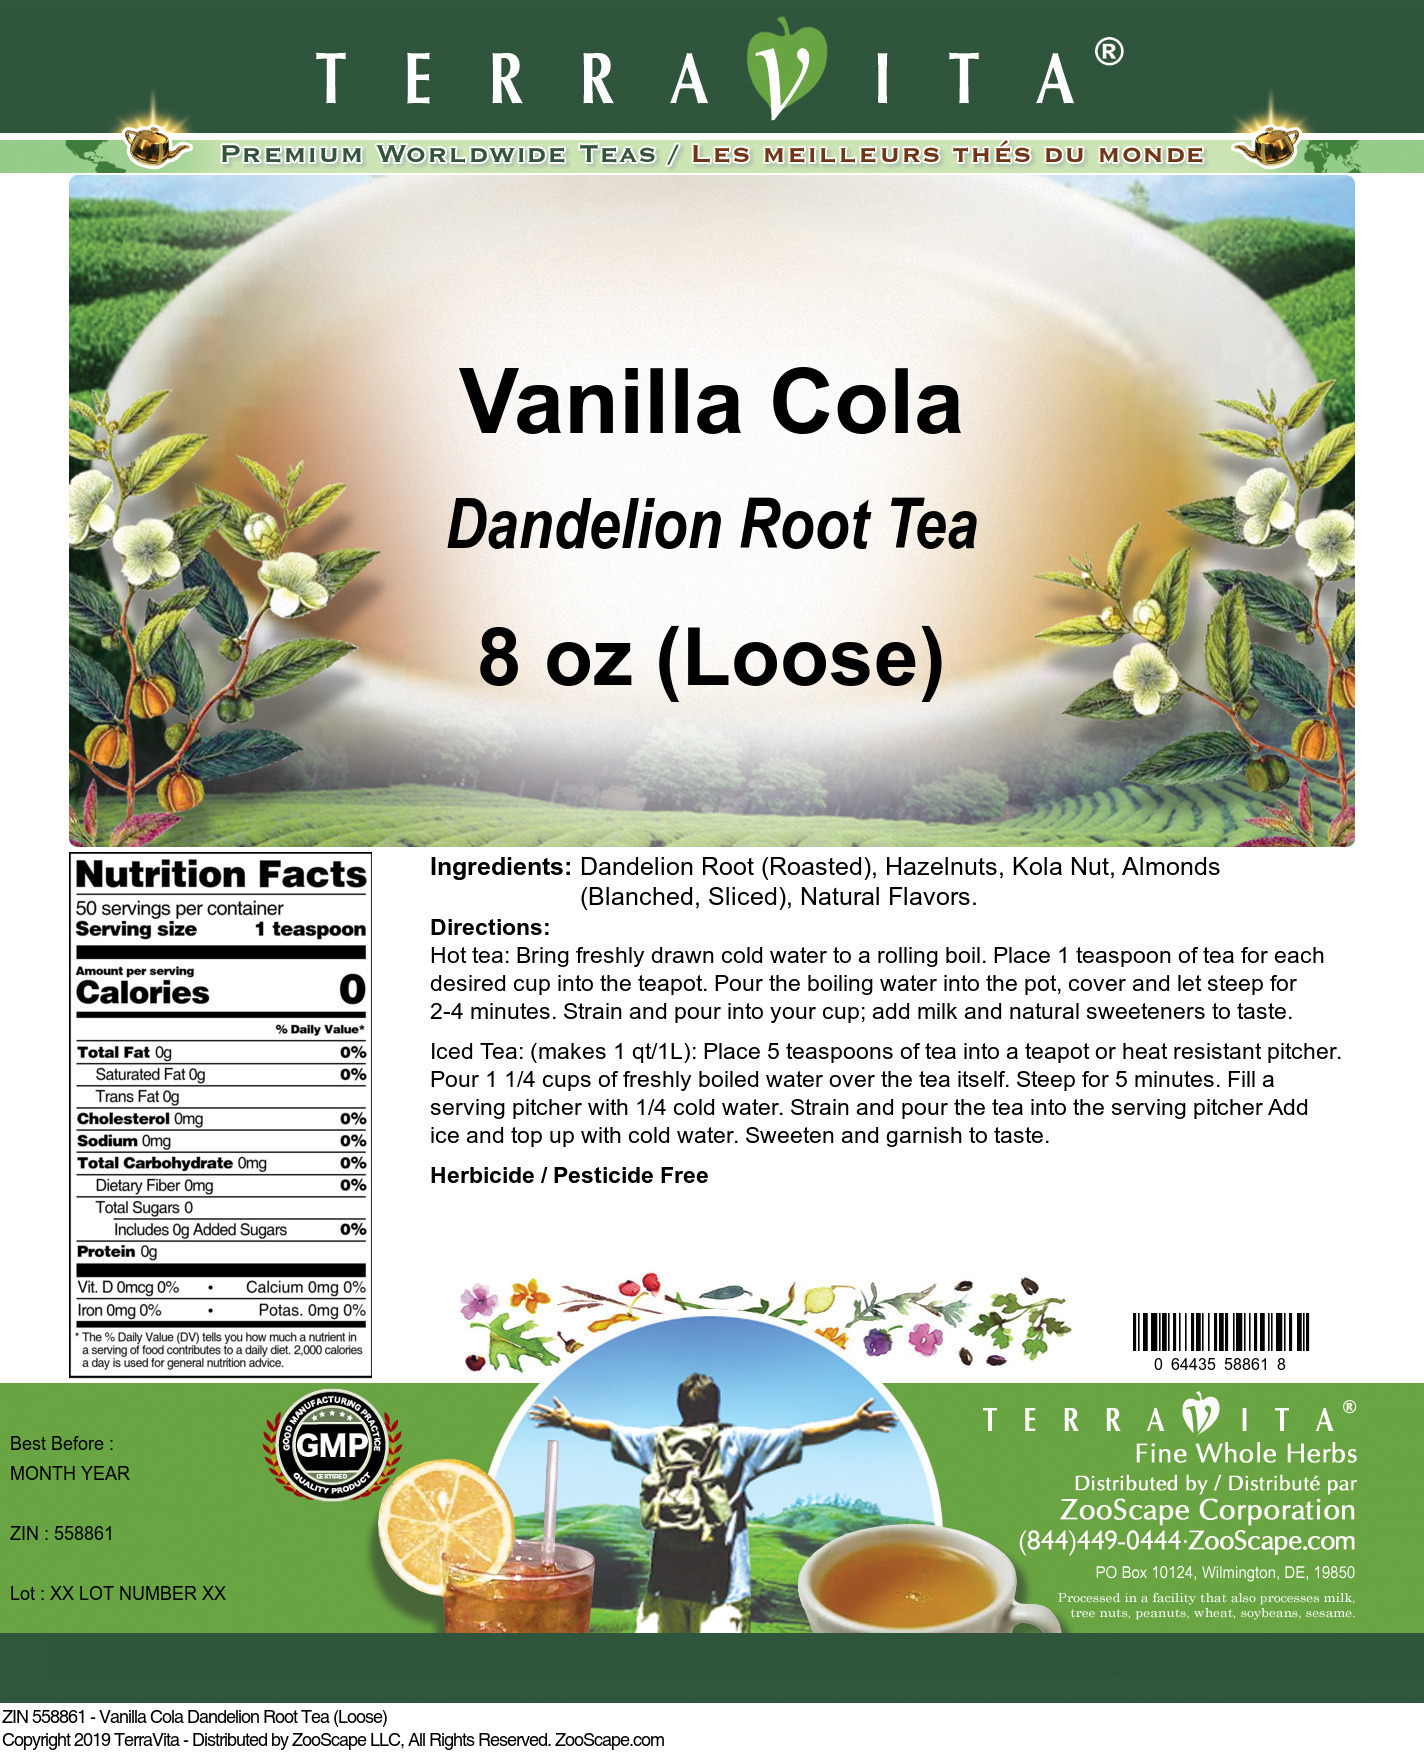 Vanilla Cola Dandelion Root Tea (Loose) - Label